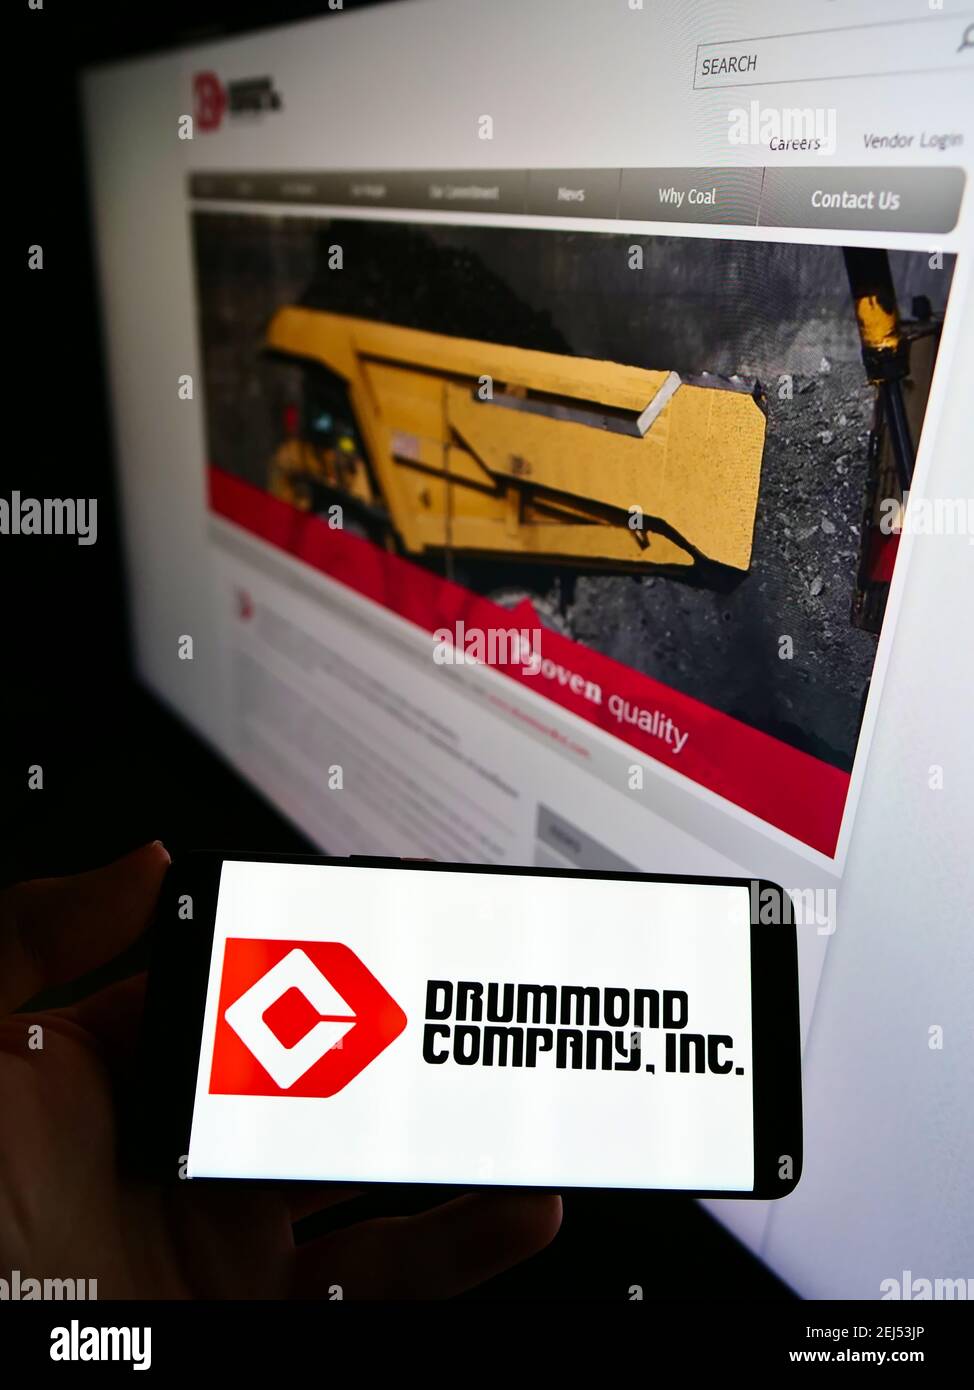 Persona che tiene il telefono mobile con il logo del commercio minerario americano Drummond Company Inc. Sullo schermo davanti alla pagina web. Focus sul display del cellulare. Foto Stock